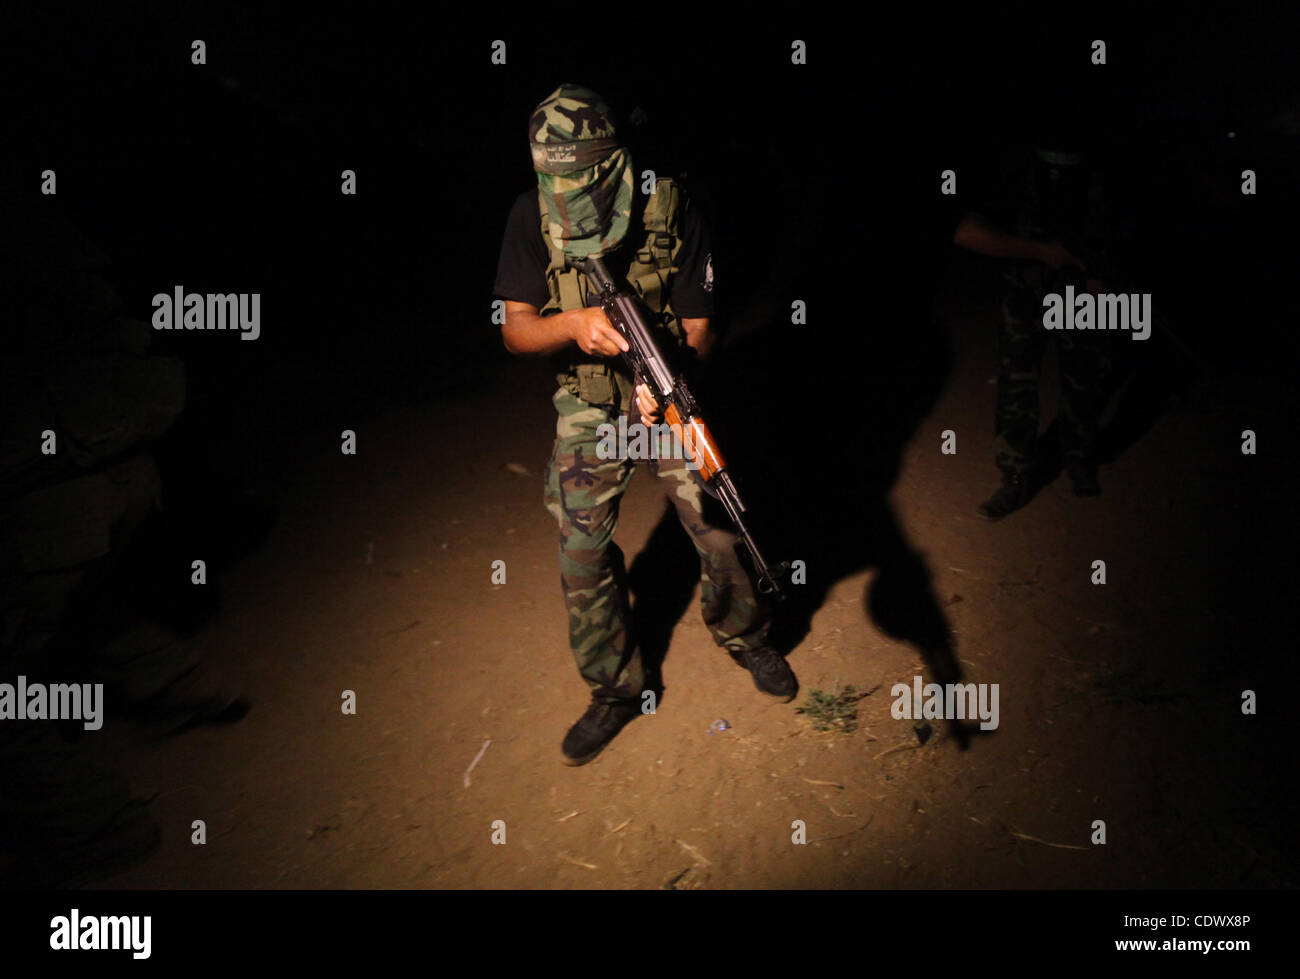 Al qassam brigades hi-res stock photography and images - Alamy